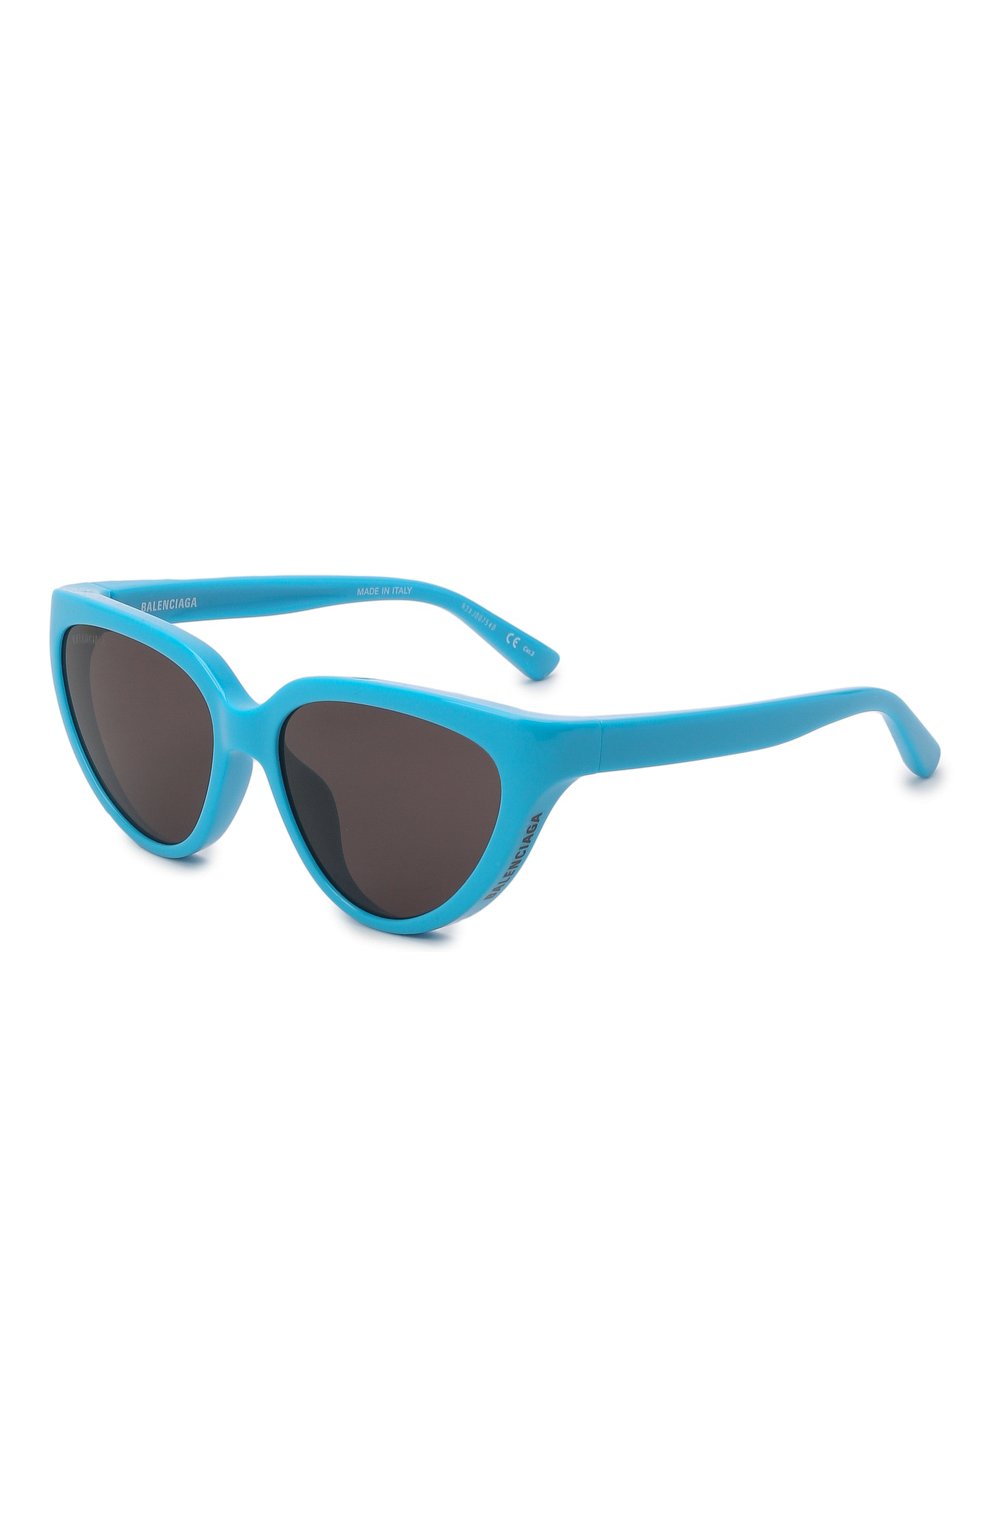 Женск�ие солнцезащитные очки BALENCIAGA бирюзового цвета, арт. 658747/T0007 | Фото 1 (Тип очков: С/з; Очки форма: Cat-eye)